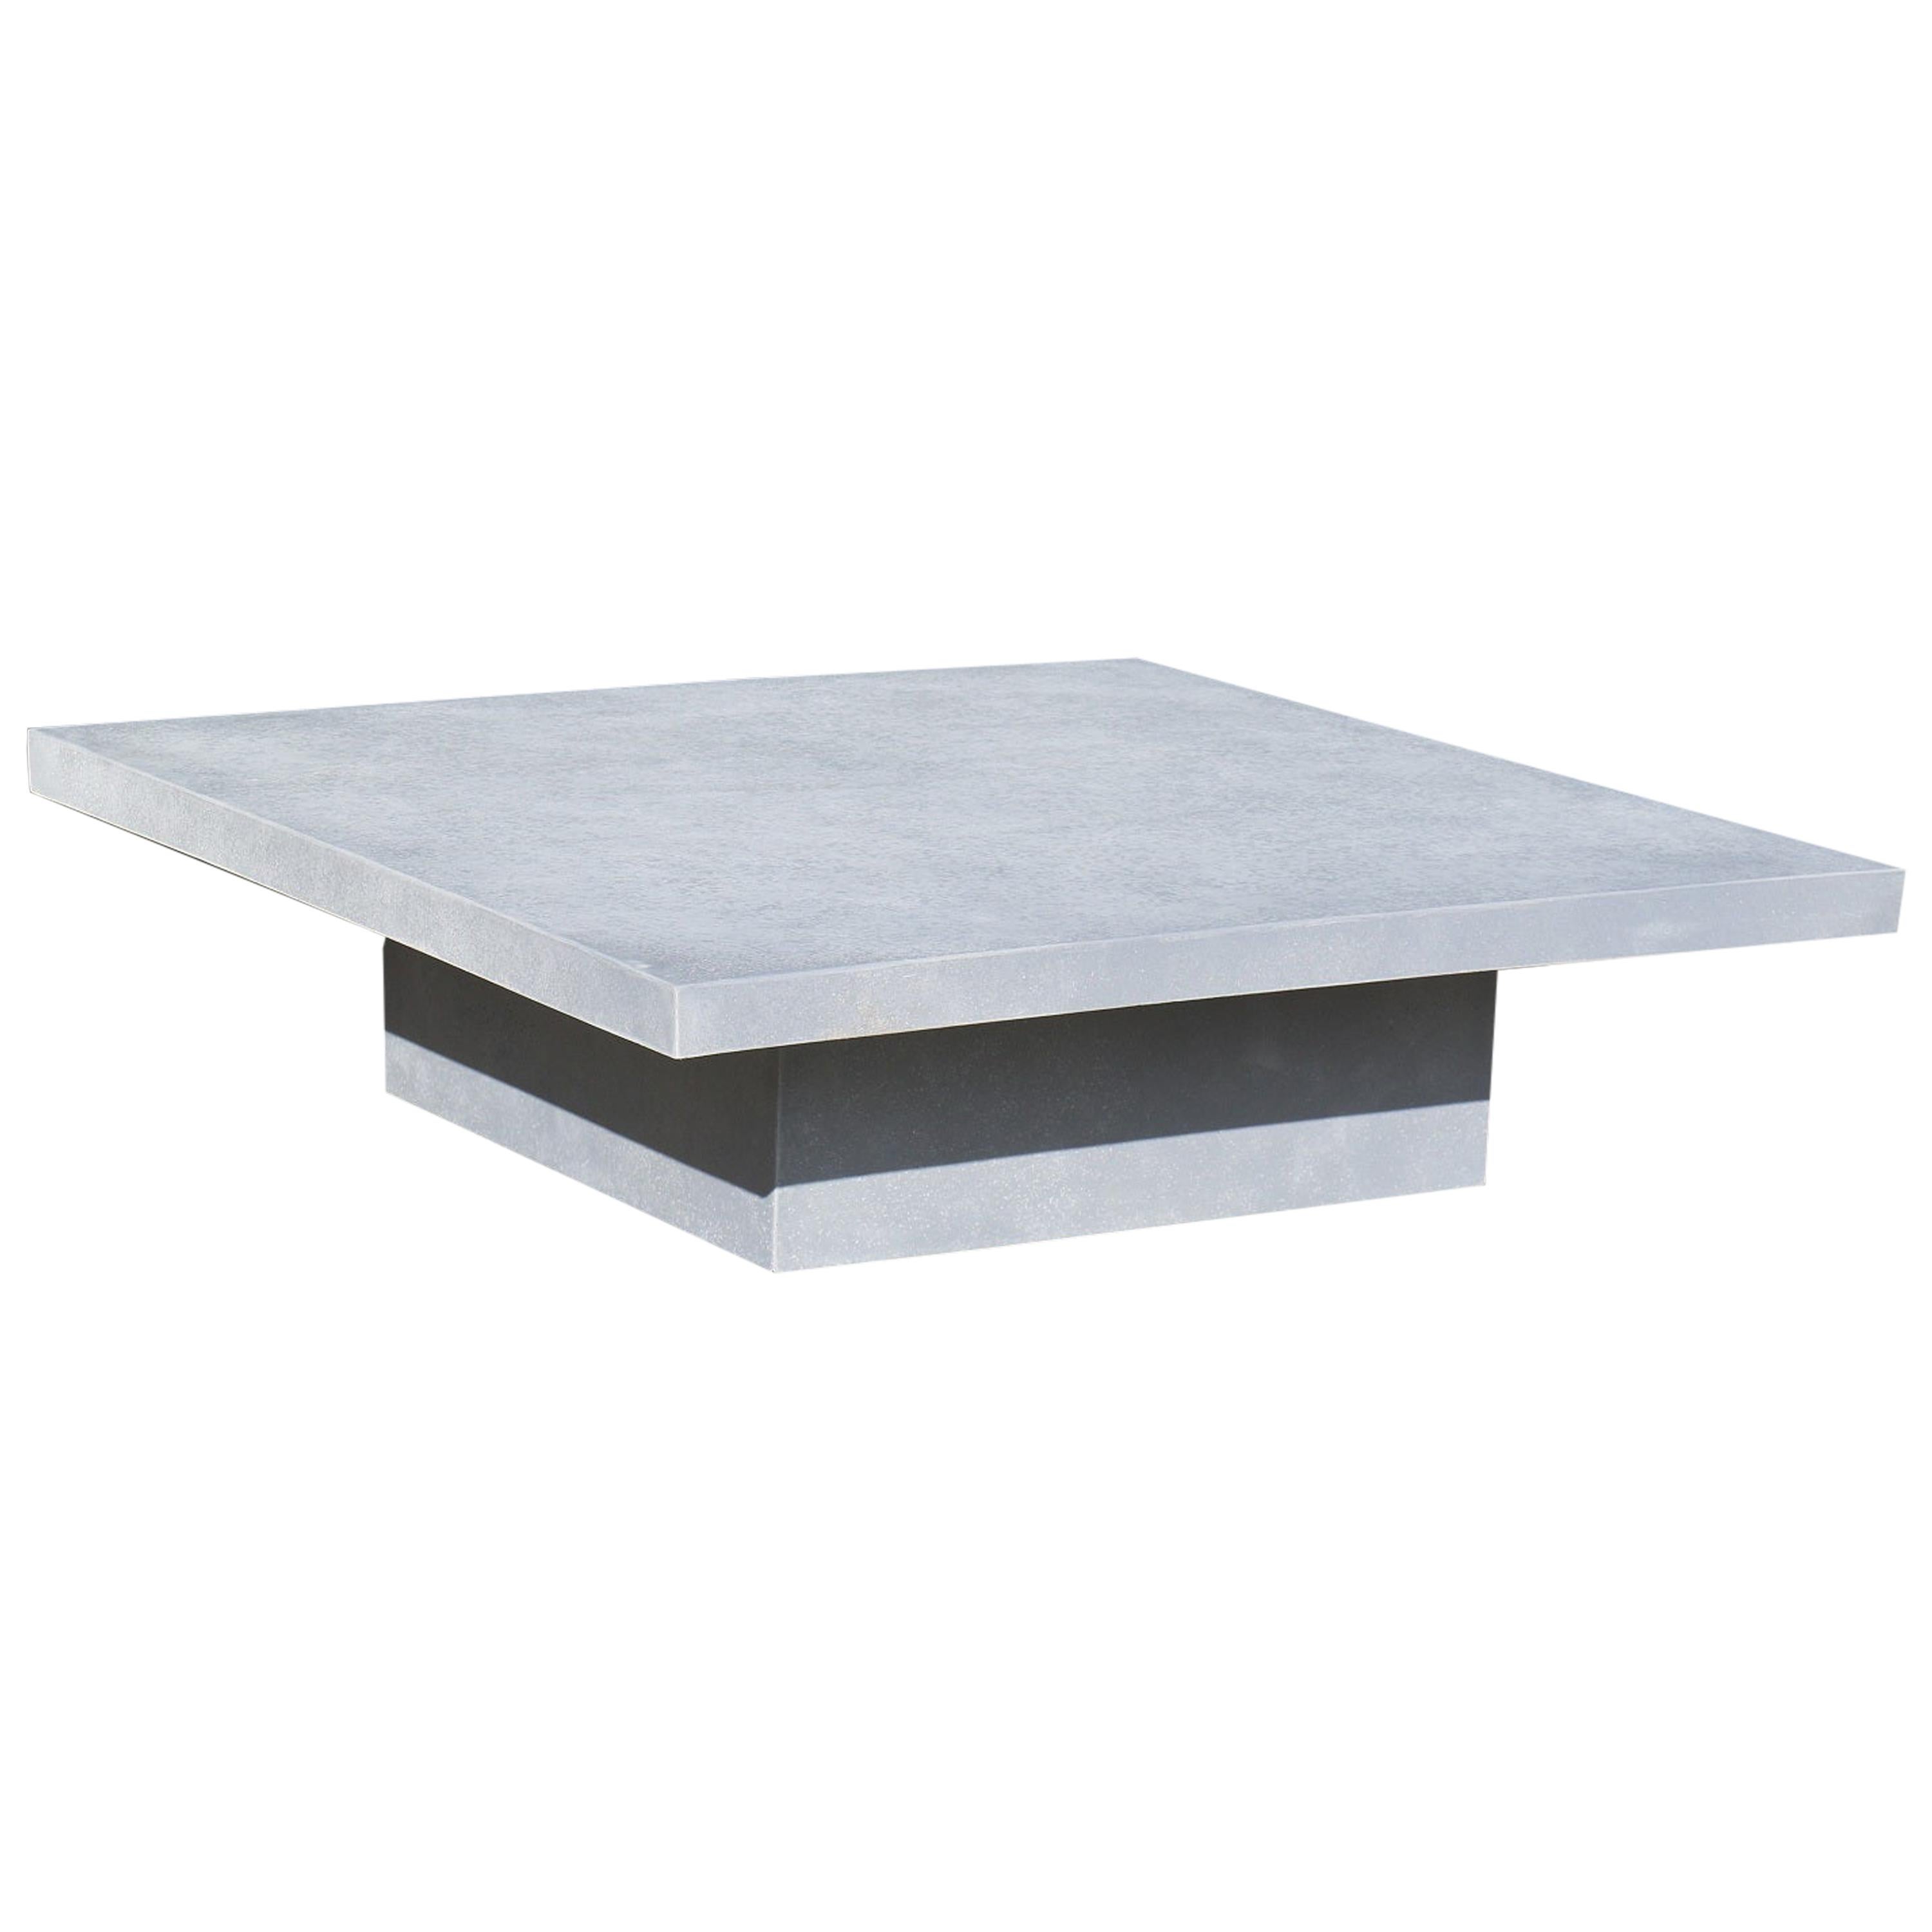  Table basse « dalle » en résine moulée, finition caractéristique de Zachary A. Design